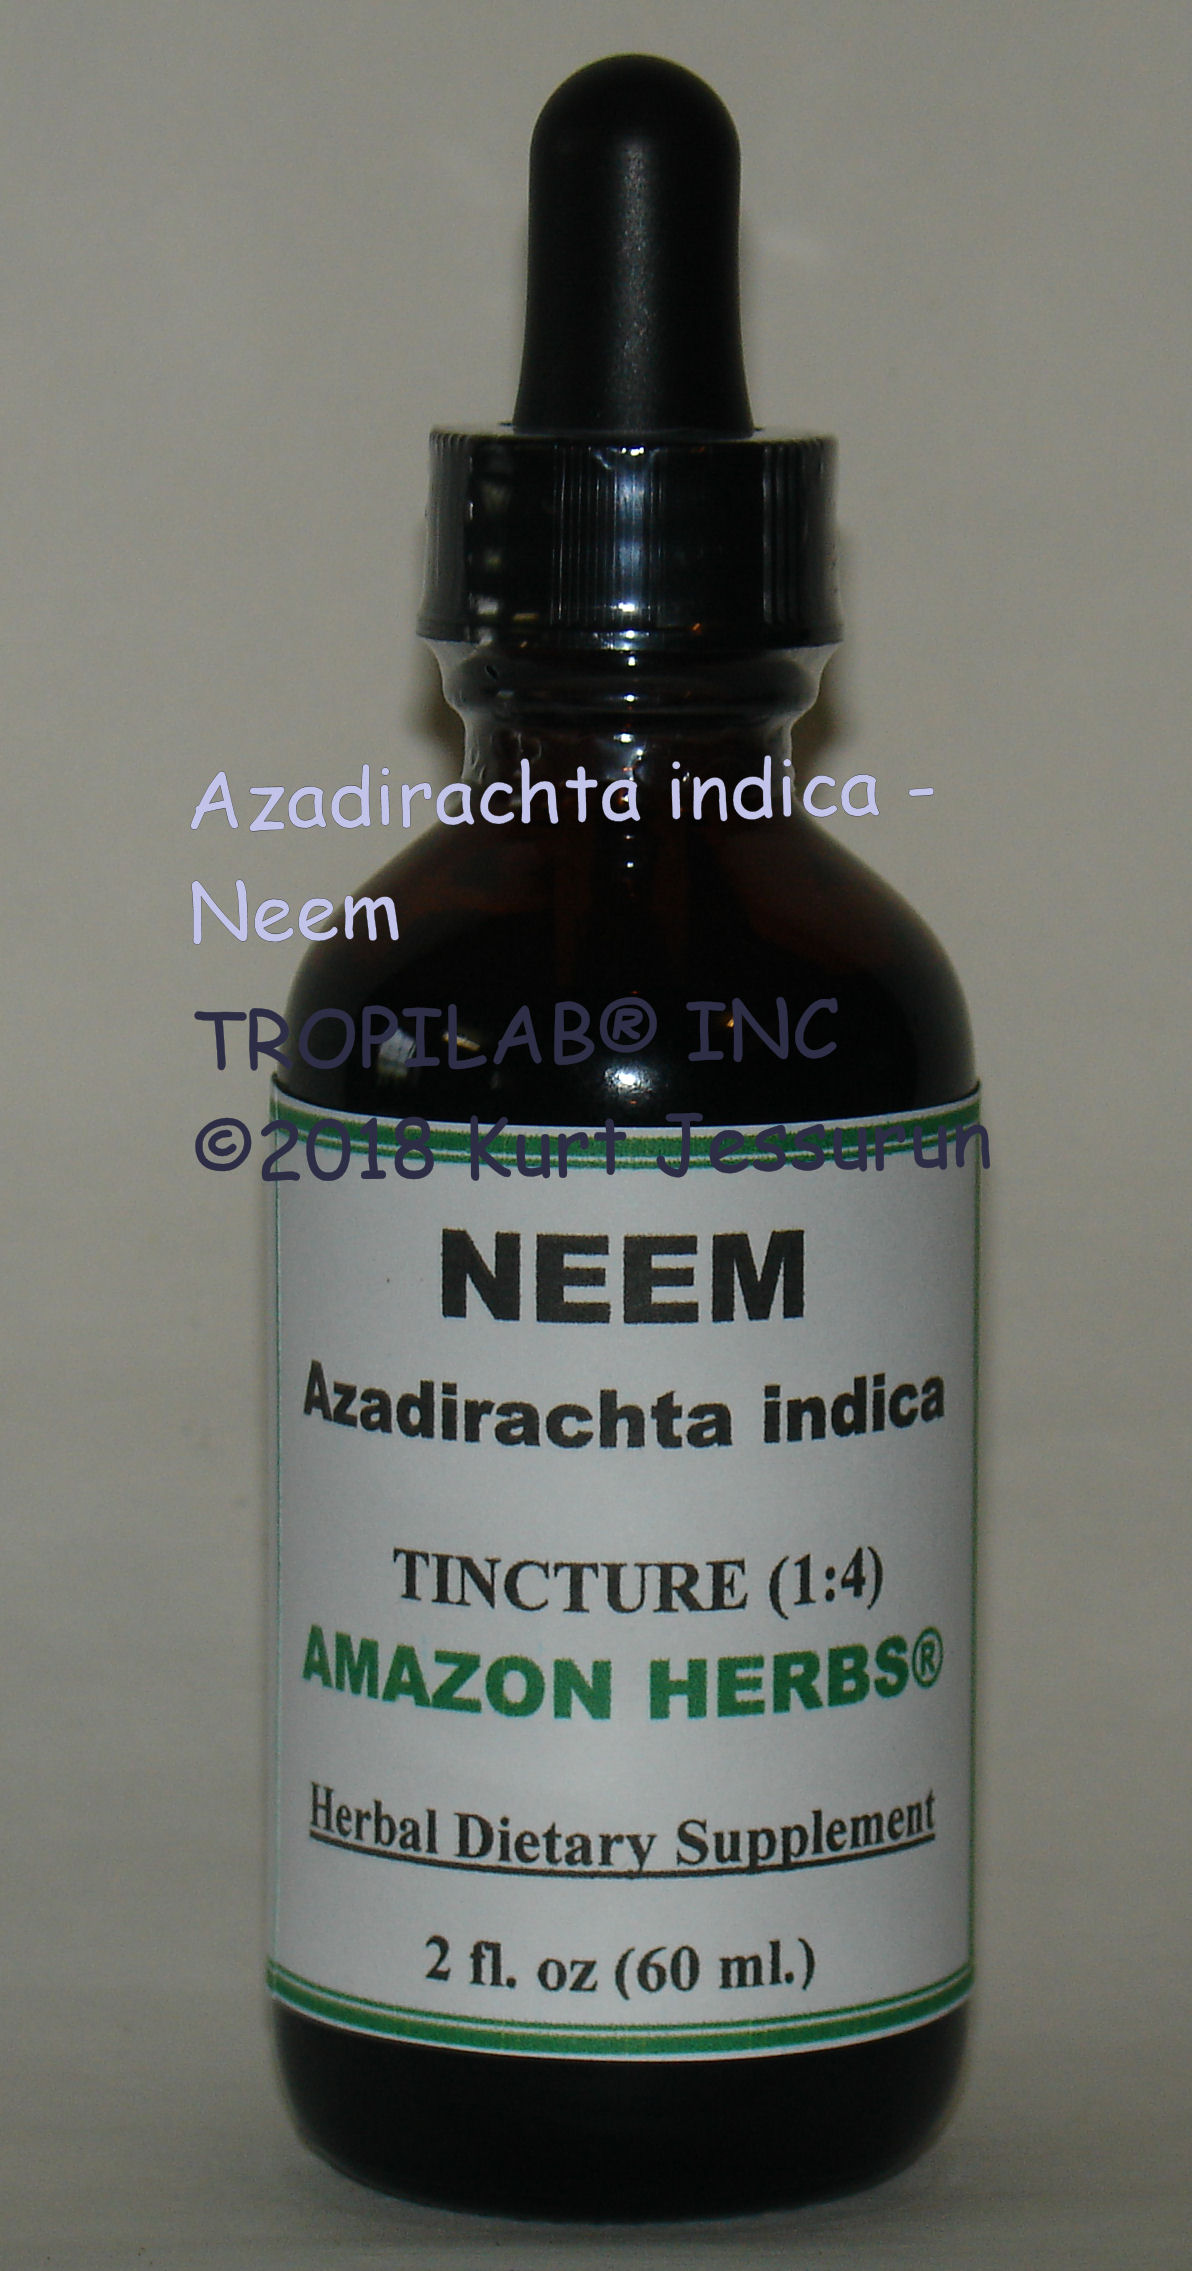 Neem (Azadirachta indica) tincture - TROPILAB